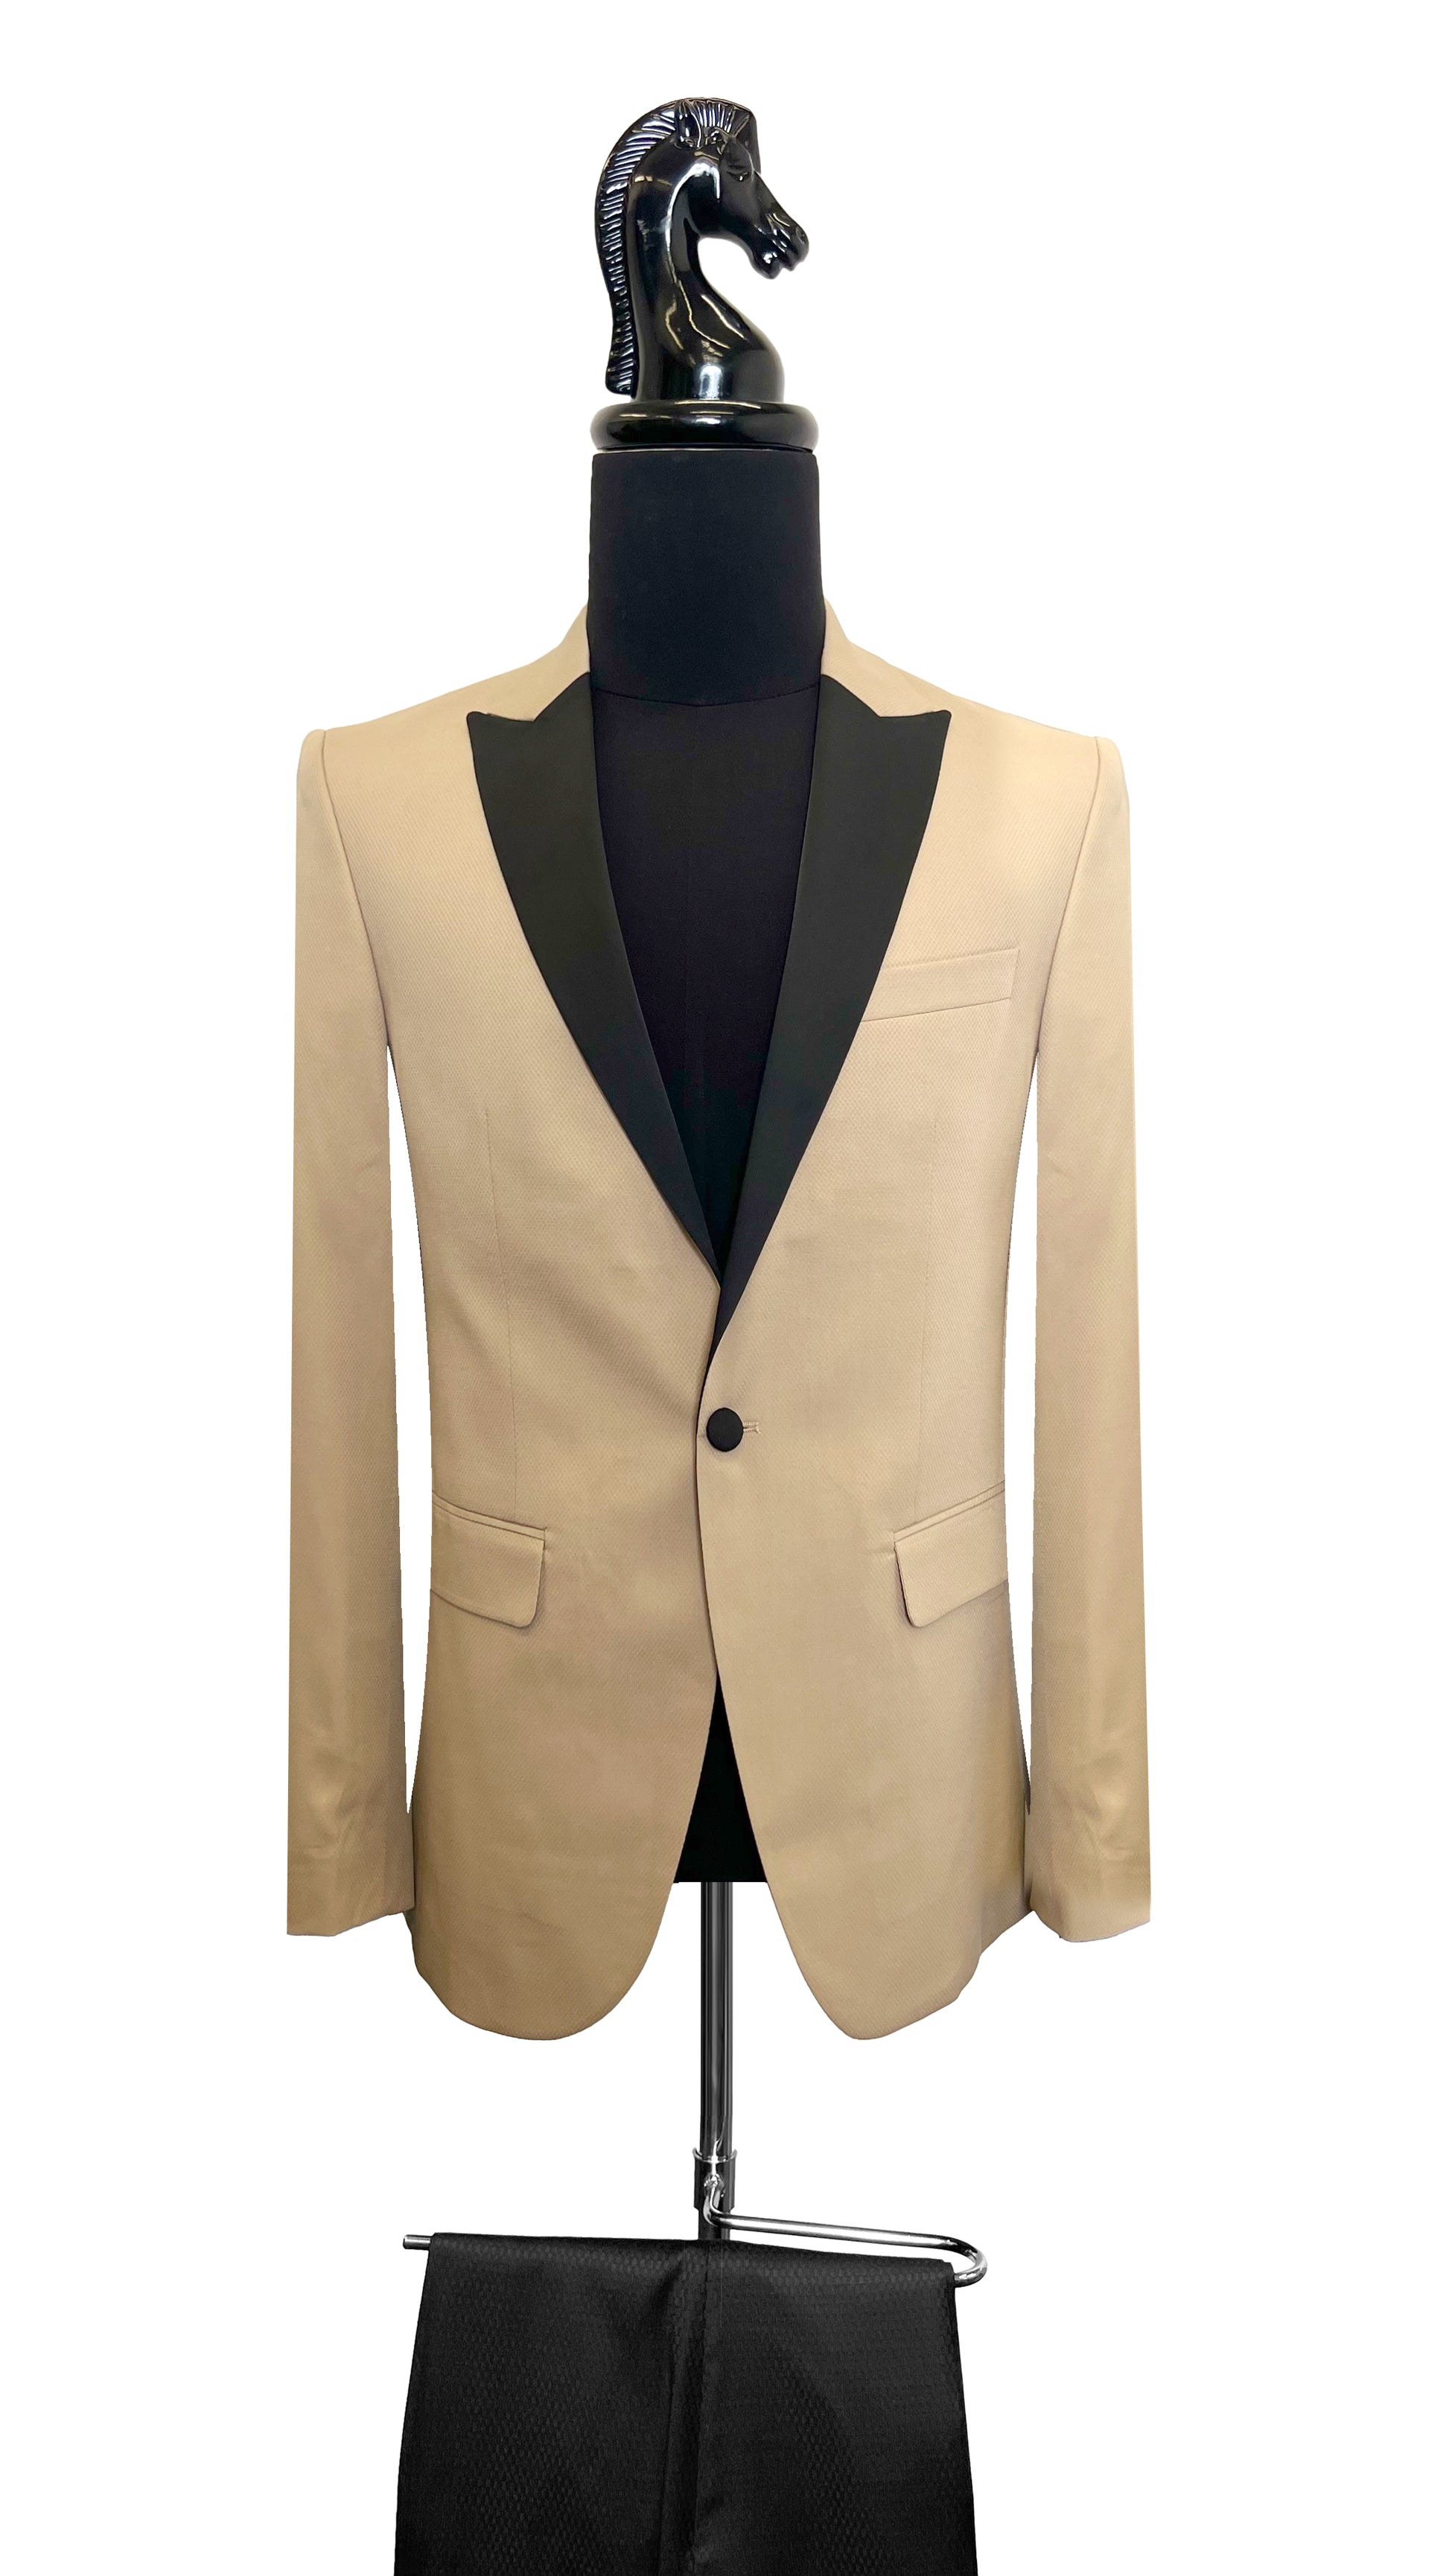 Men's Premium Classic Tuxedo by Vercini SUITS 2 Piece Suits Vercini